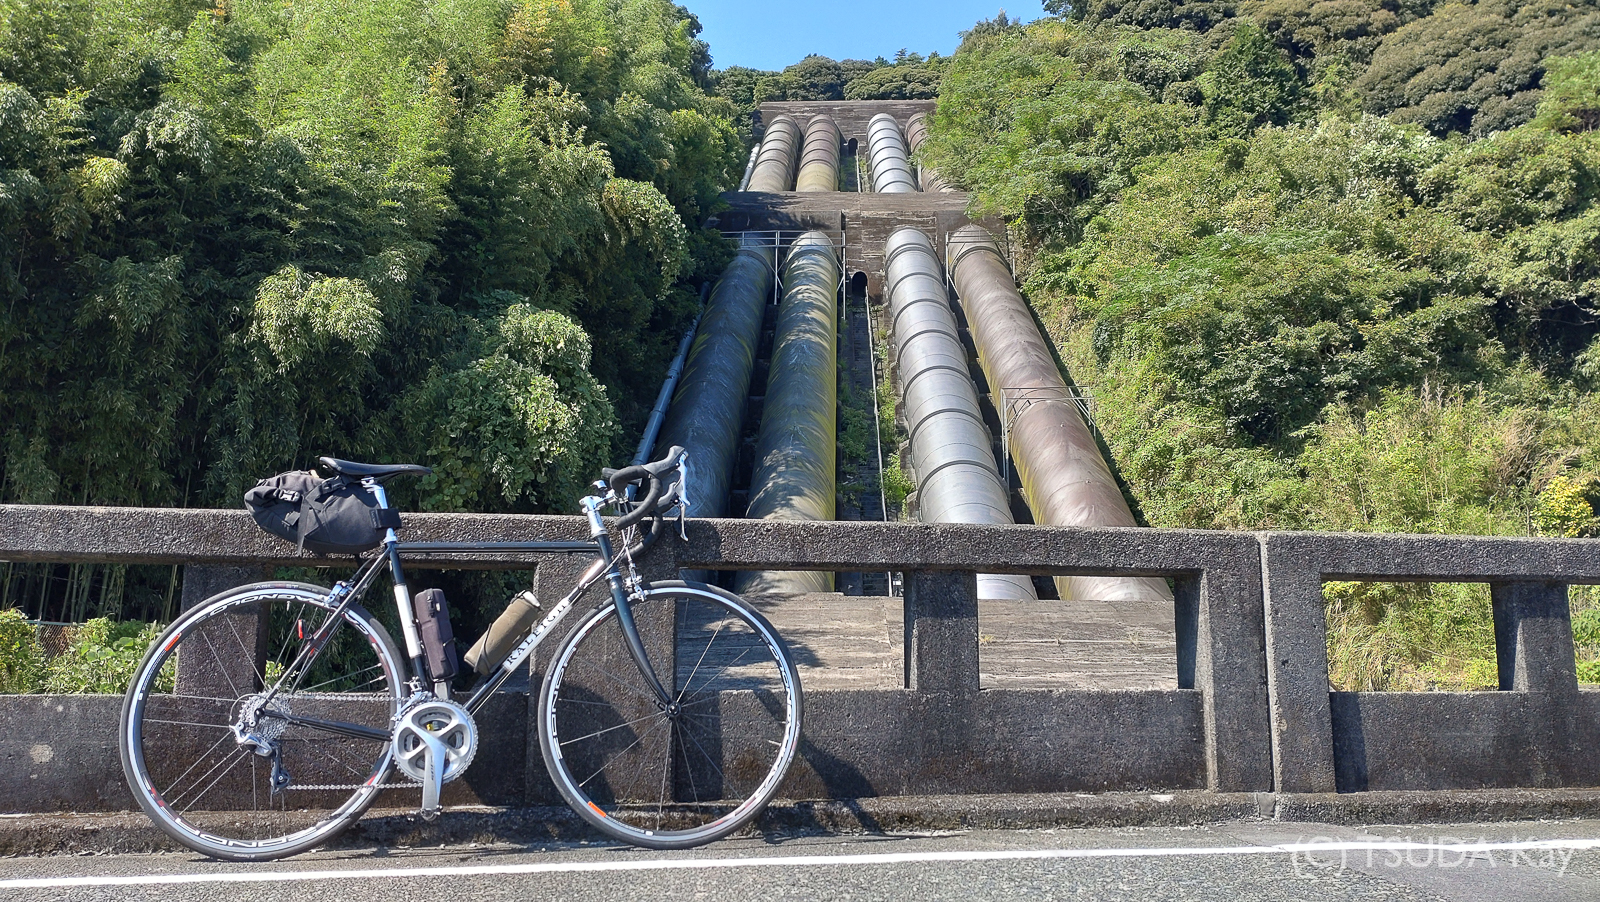 I cycled from mishima to shizuoka 17